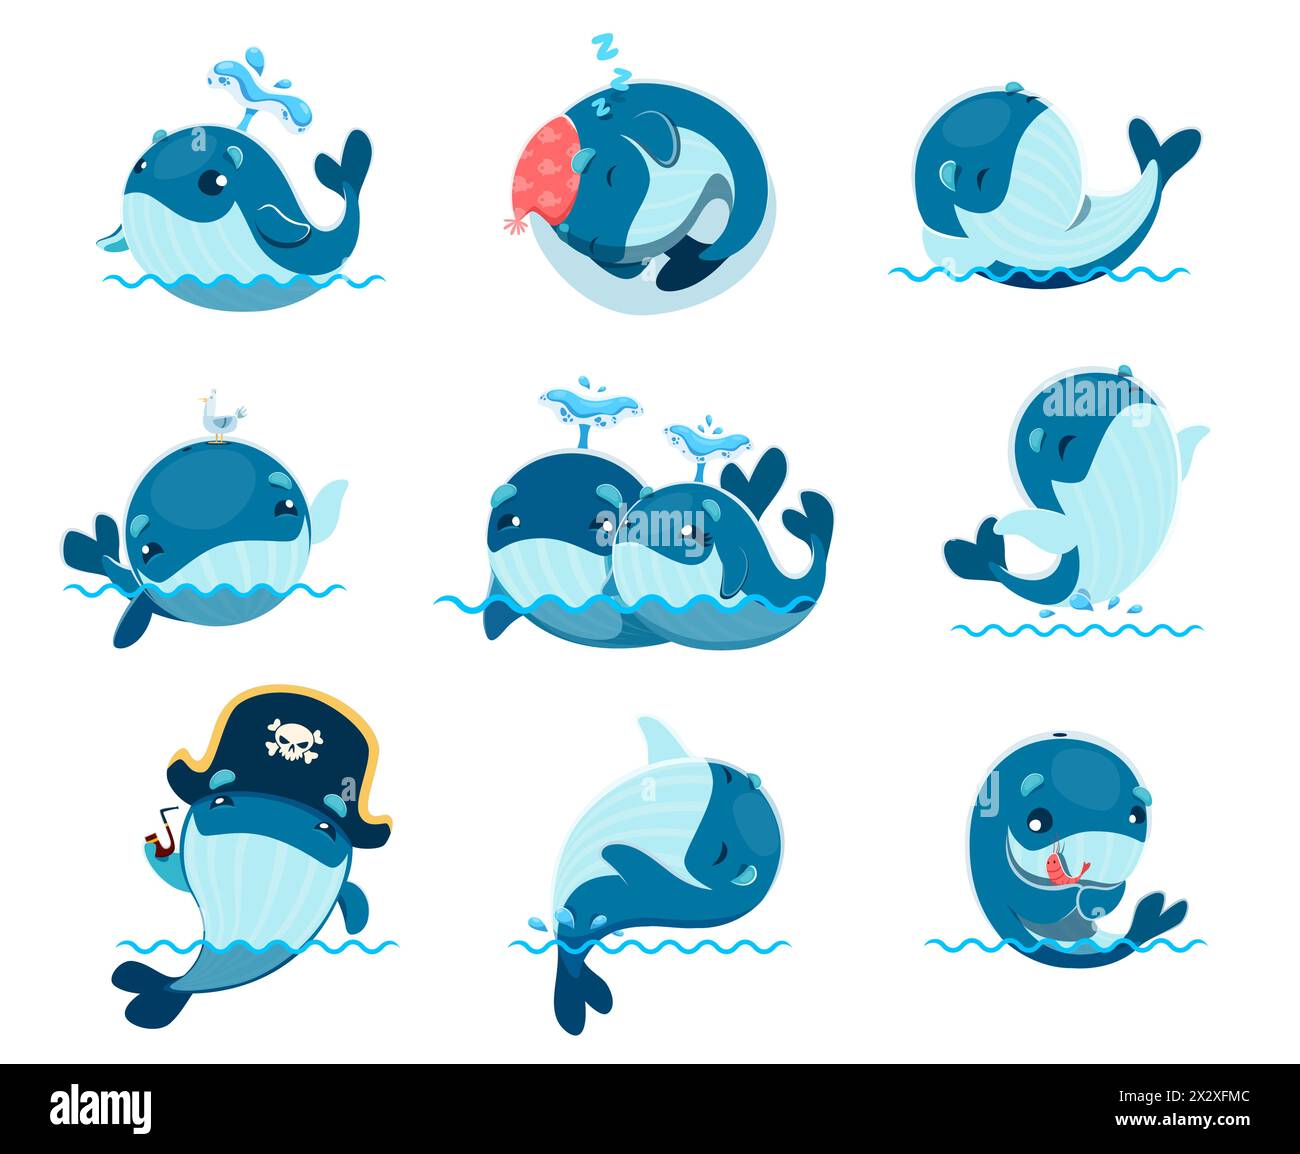 Niedliche Kawaii-Walfiguren. Lustige Meerwassertiere Vektorfiguren Set von Blau- und Buckelwalen mit fröhlichem Lächeln, Spritzen Wassertropfen durch Bloholes, Schwimmen und Springen Stock Vektor